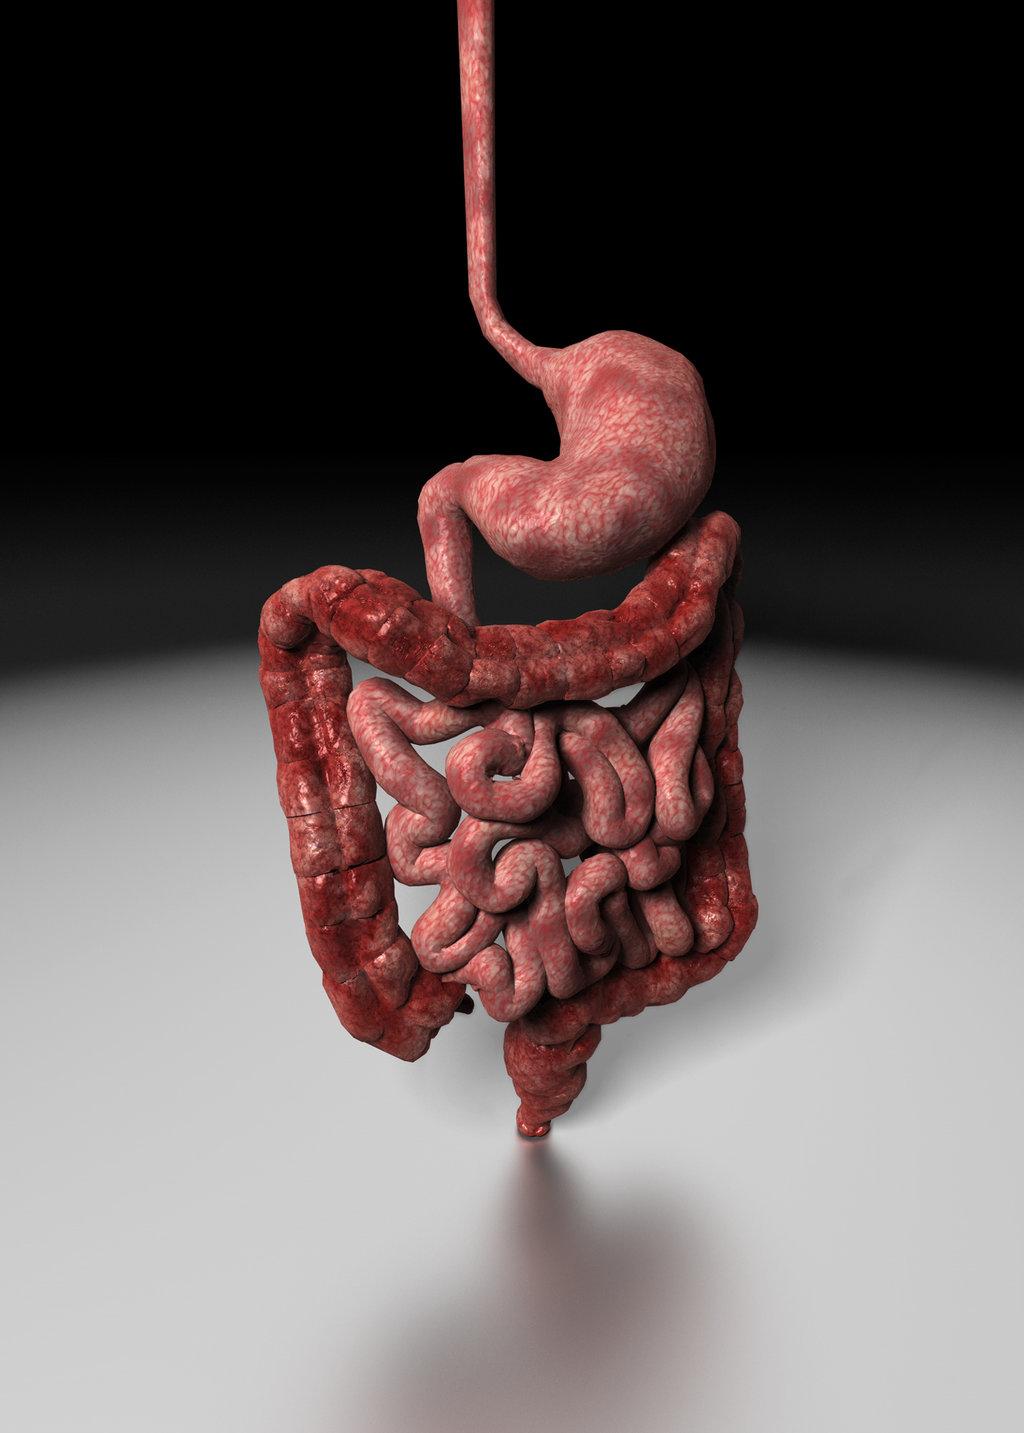 Органы желудок кишечник печень. ЖКТ желудочно-кишечный тракт. Желудочно-кишечный тракт курильщика. Пищеварительная система человека кишки. Пищеварительная система человека желудок.